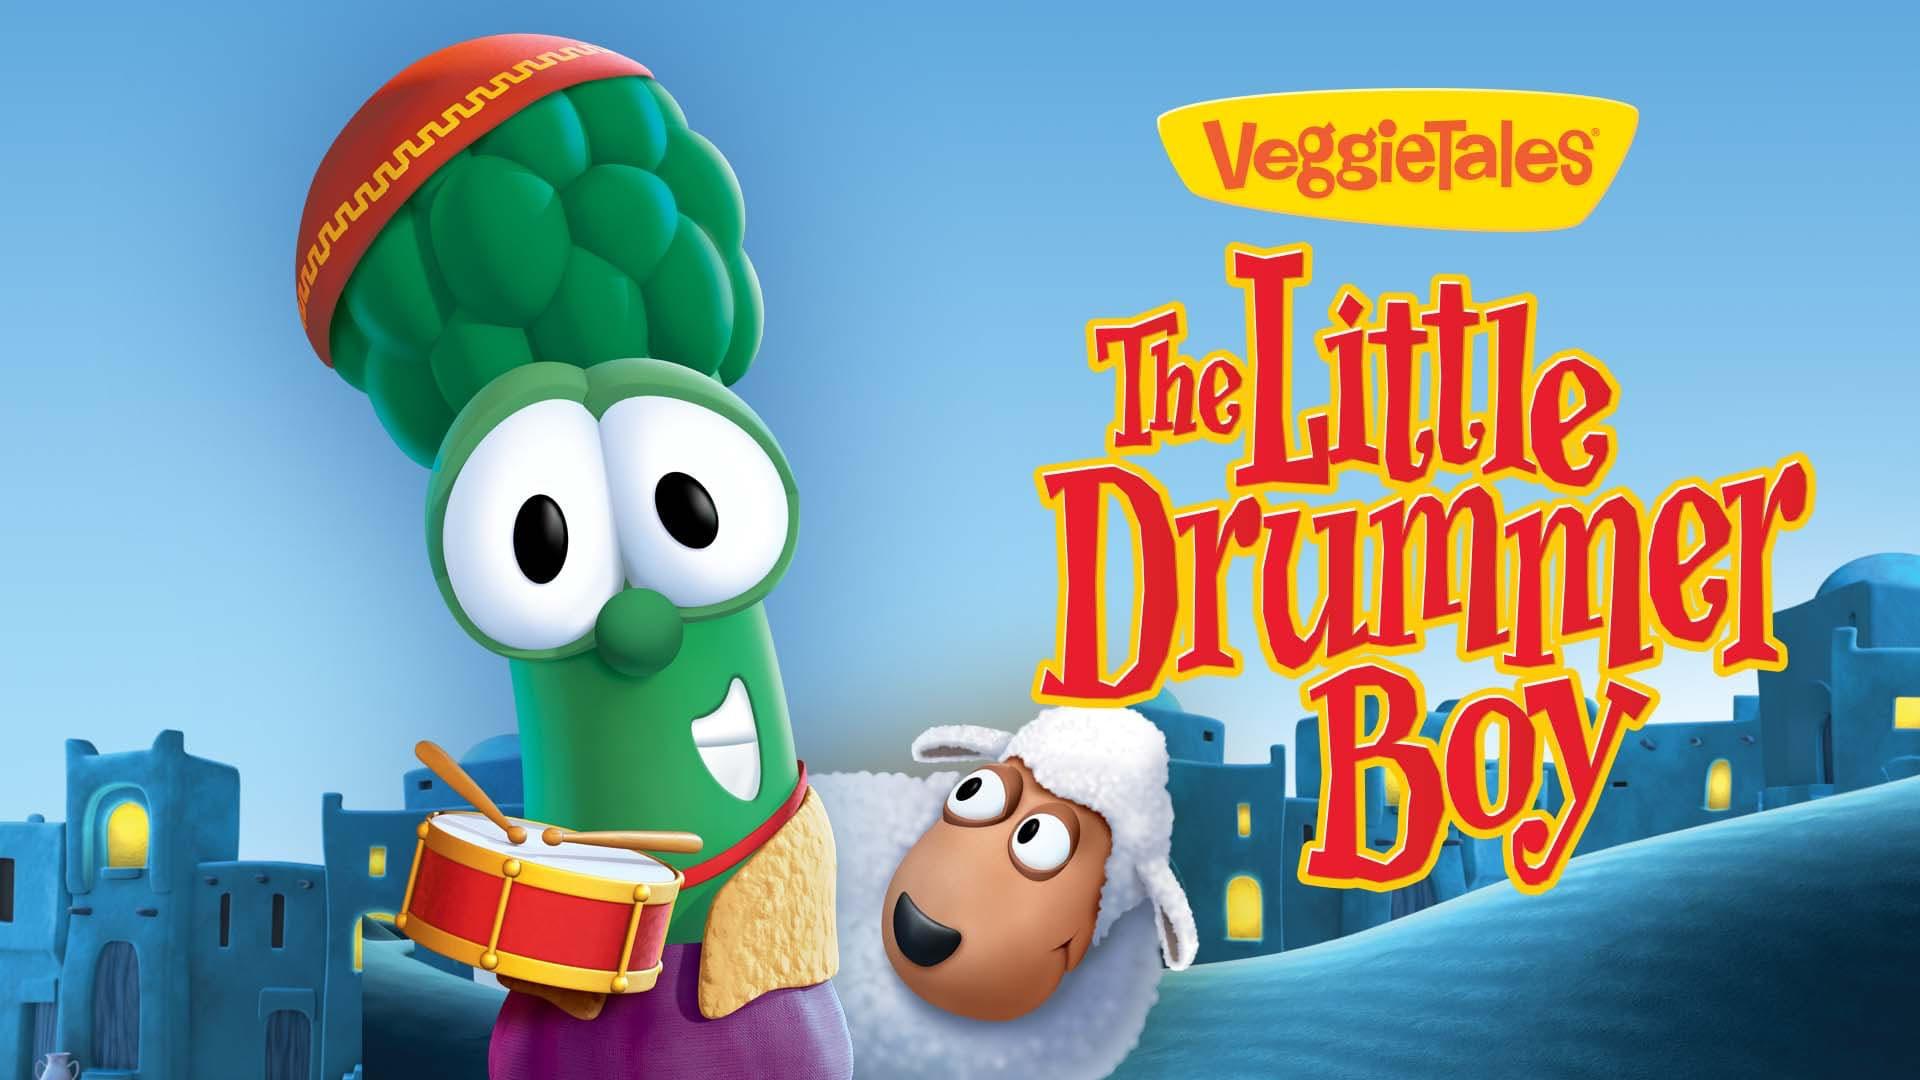 VeggieTales: The Little Drummer Boy backdrop